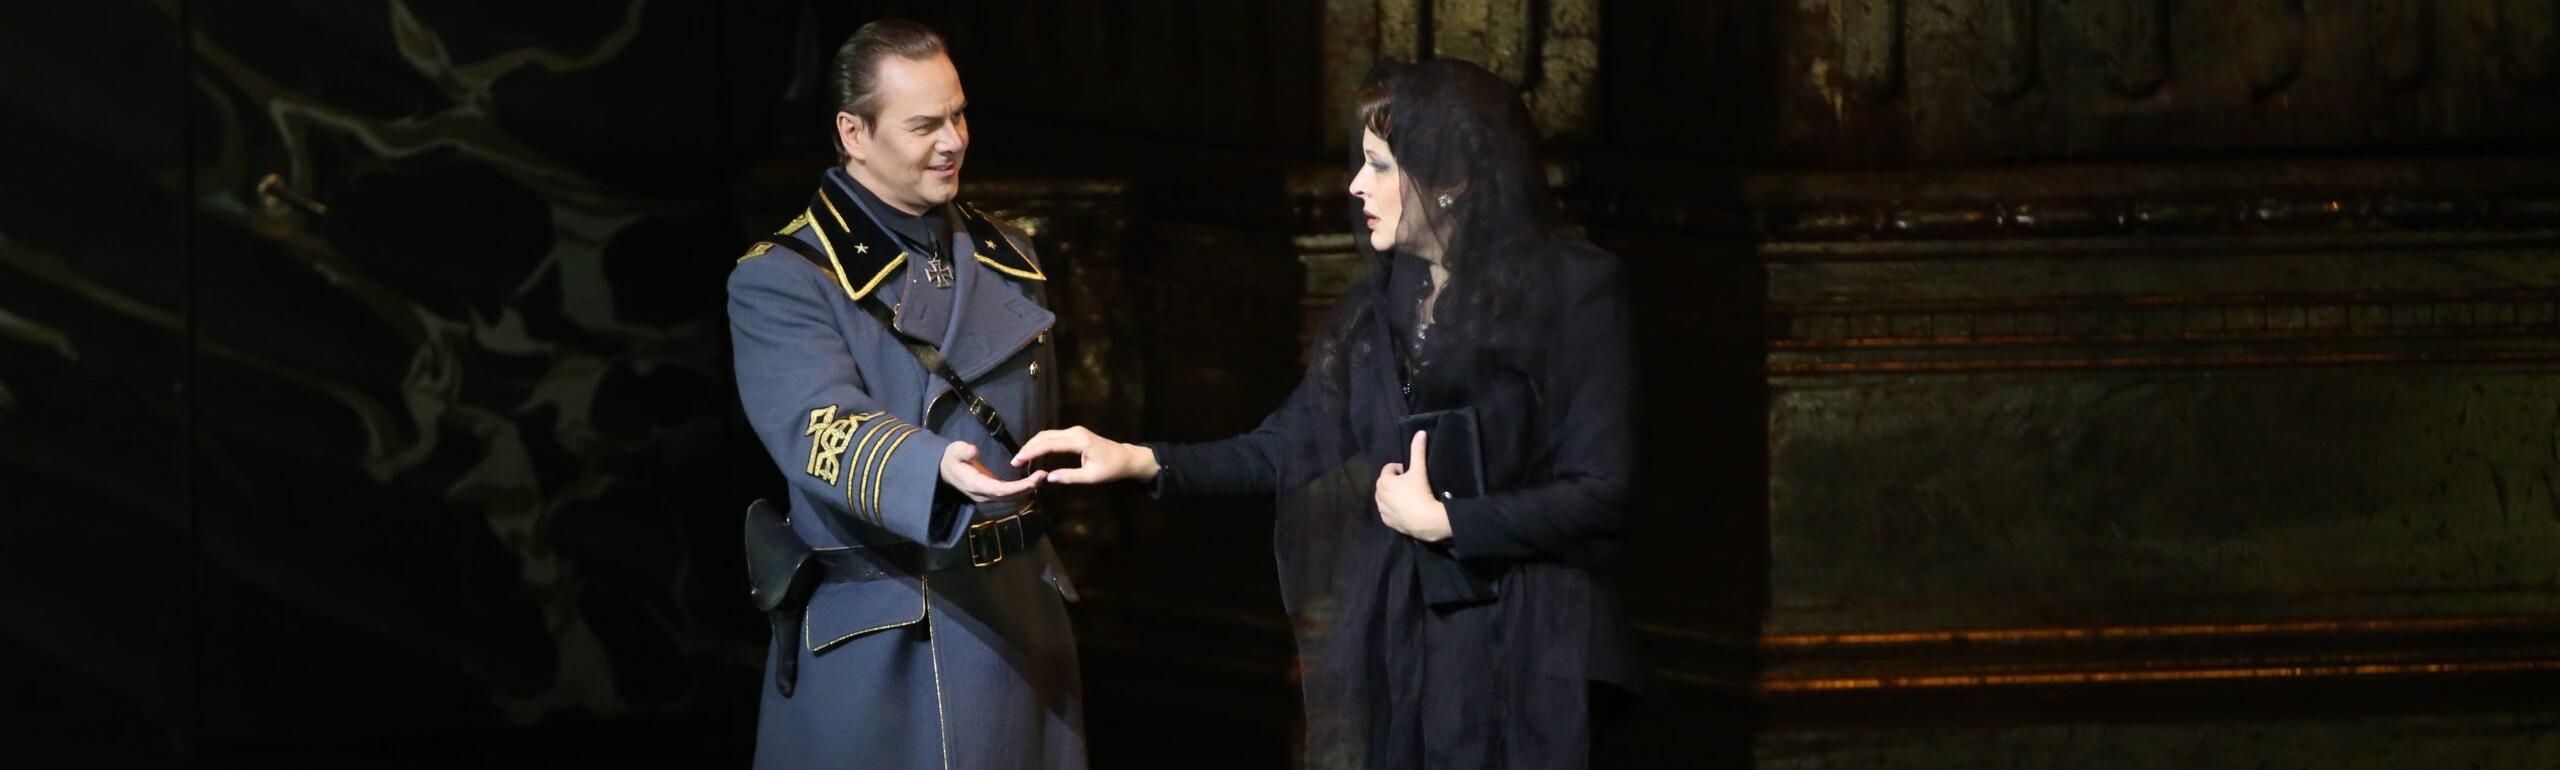 Опера «Тоска» на Новой сцене Мариинского театра